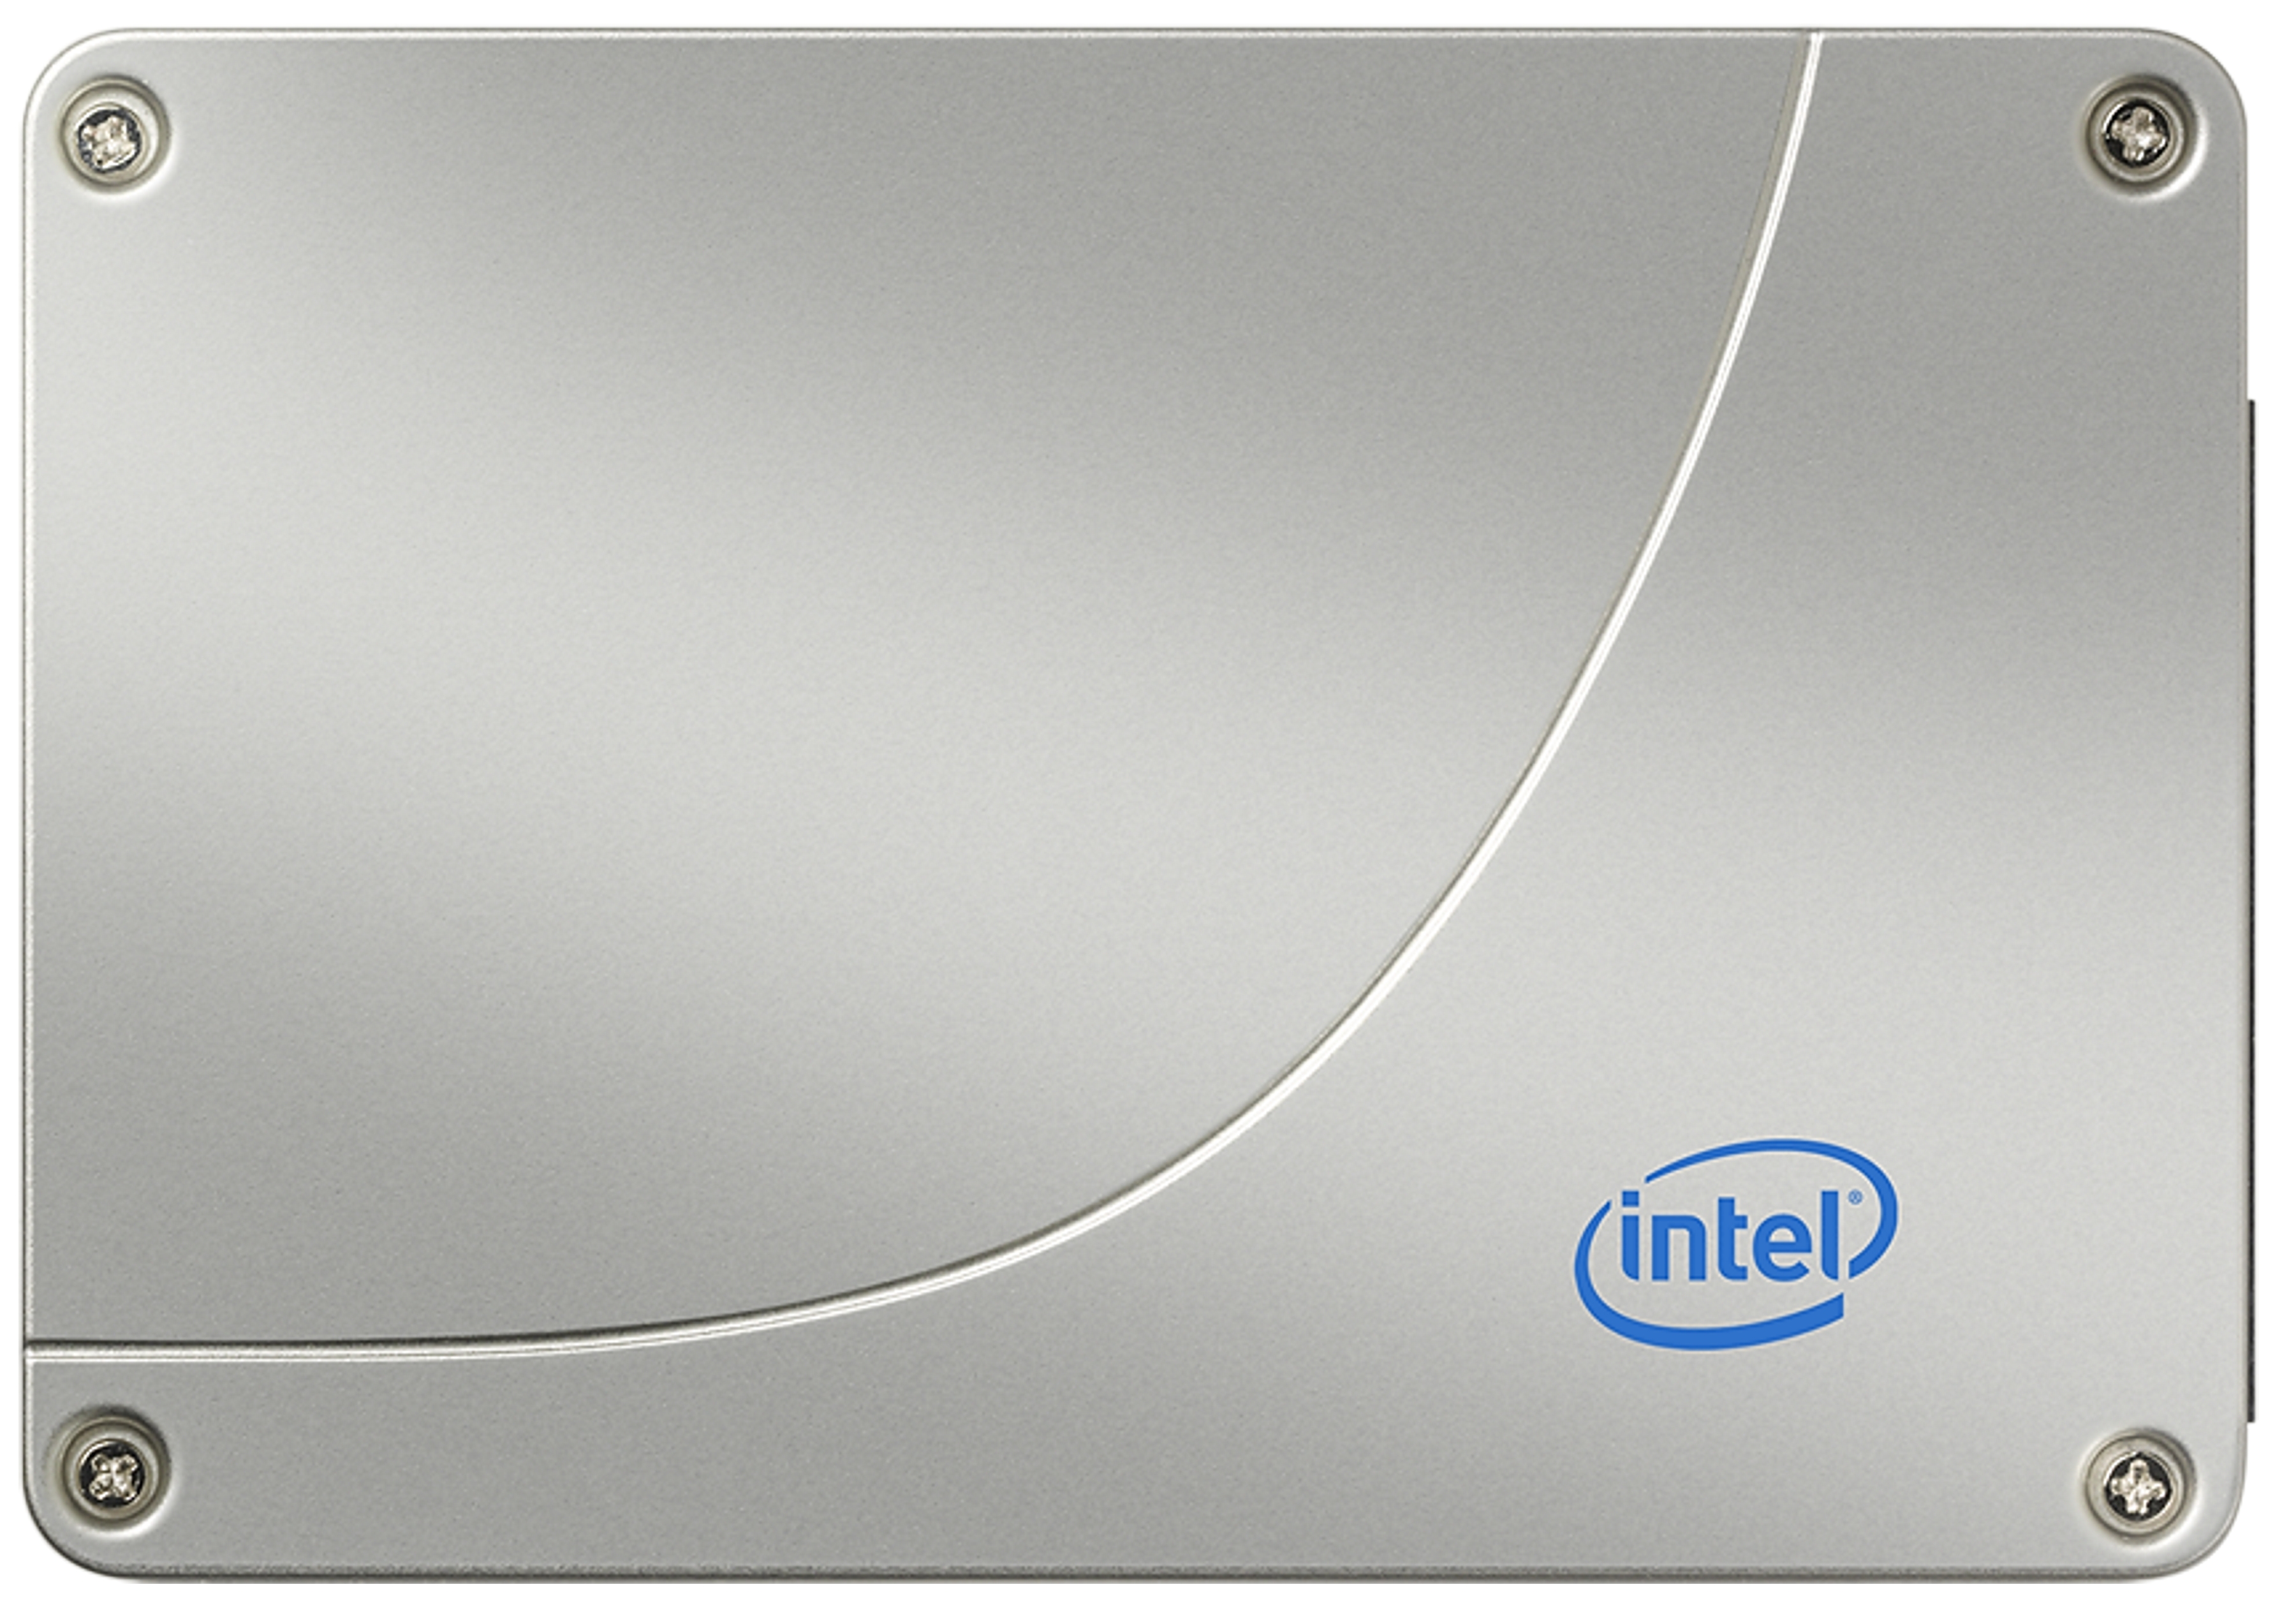 Immagine pubblicata in relazione al seguente contenuto: Intel annuncia gli SSD a 34nm di nuova generazione X25-M | Nome immagine: news11048_1.jpg